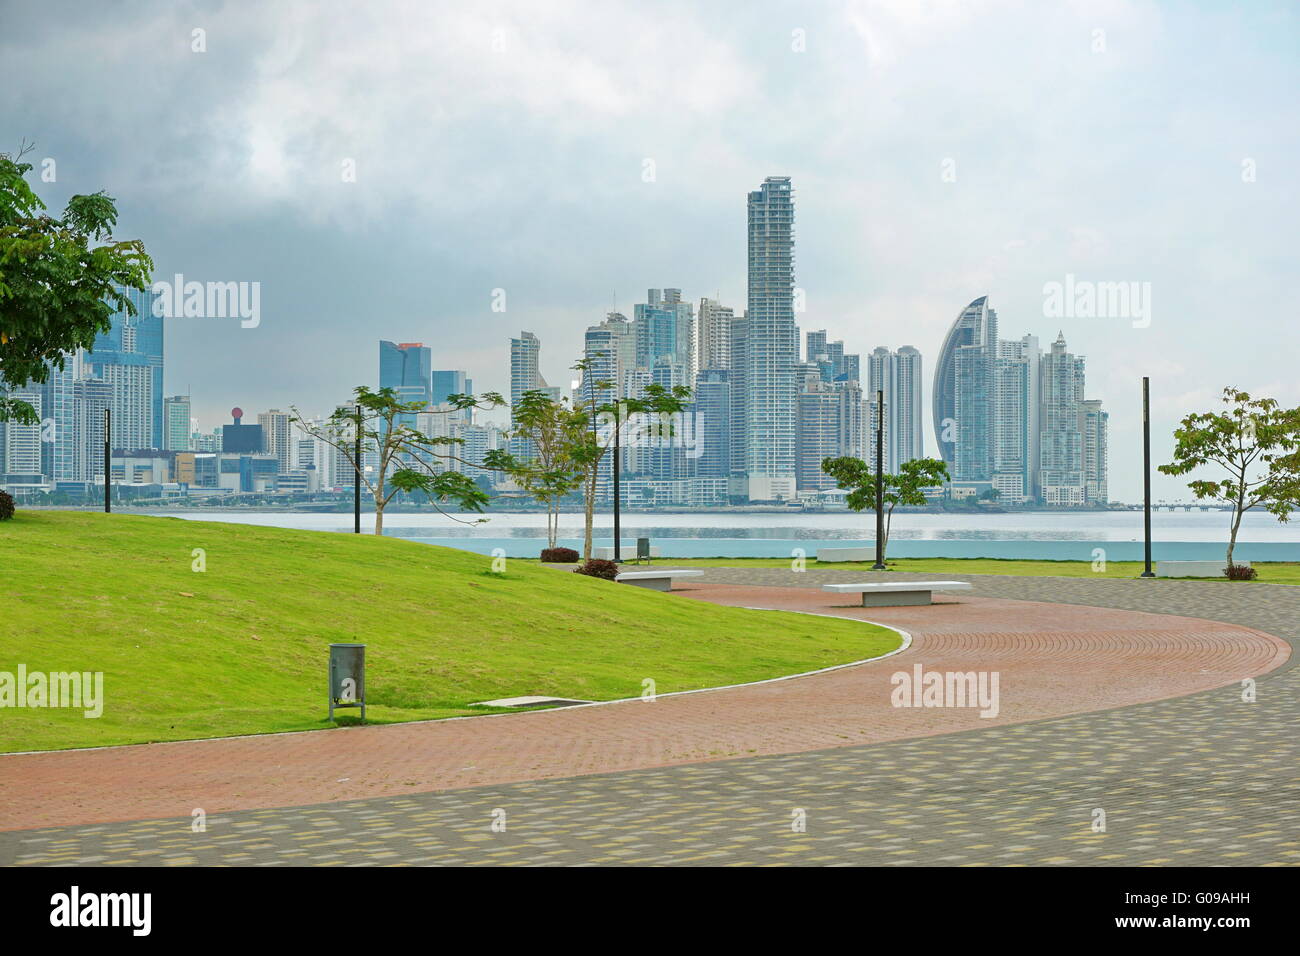 Passerella sul fronte oceano in Panama City con grattacieli e cielo nuvoloso, Panama, America Centrale Foto Stock